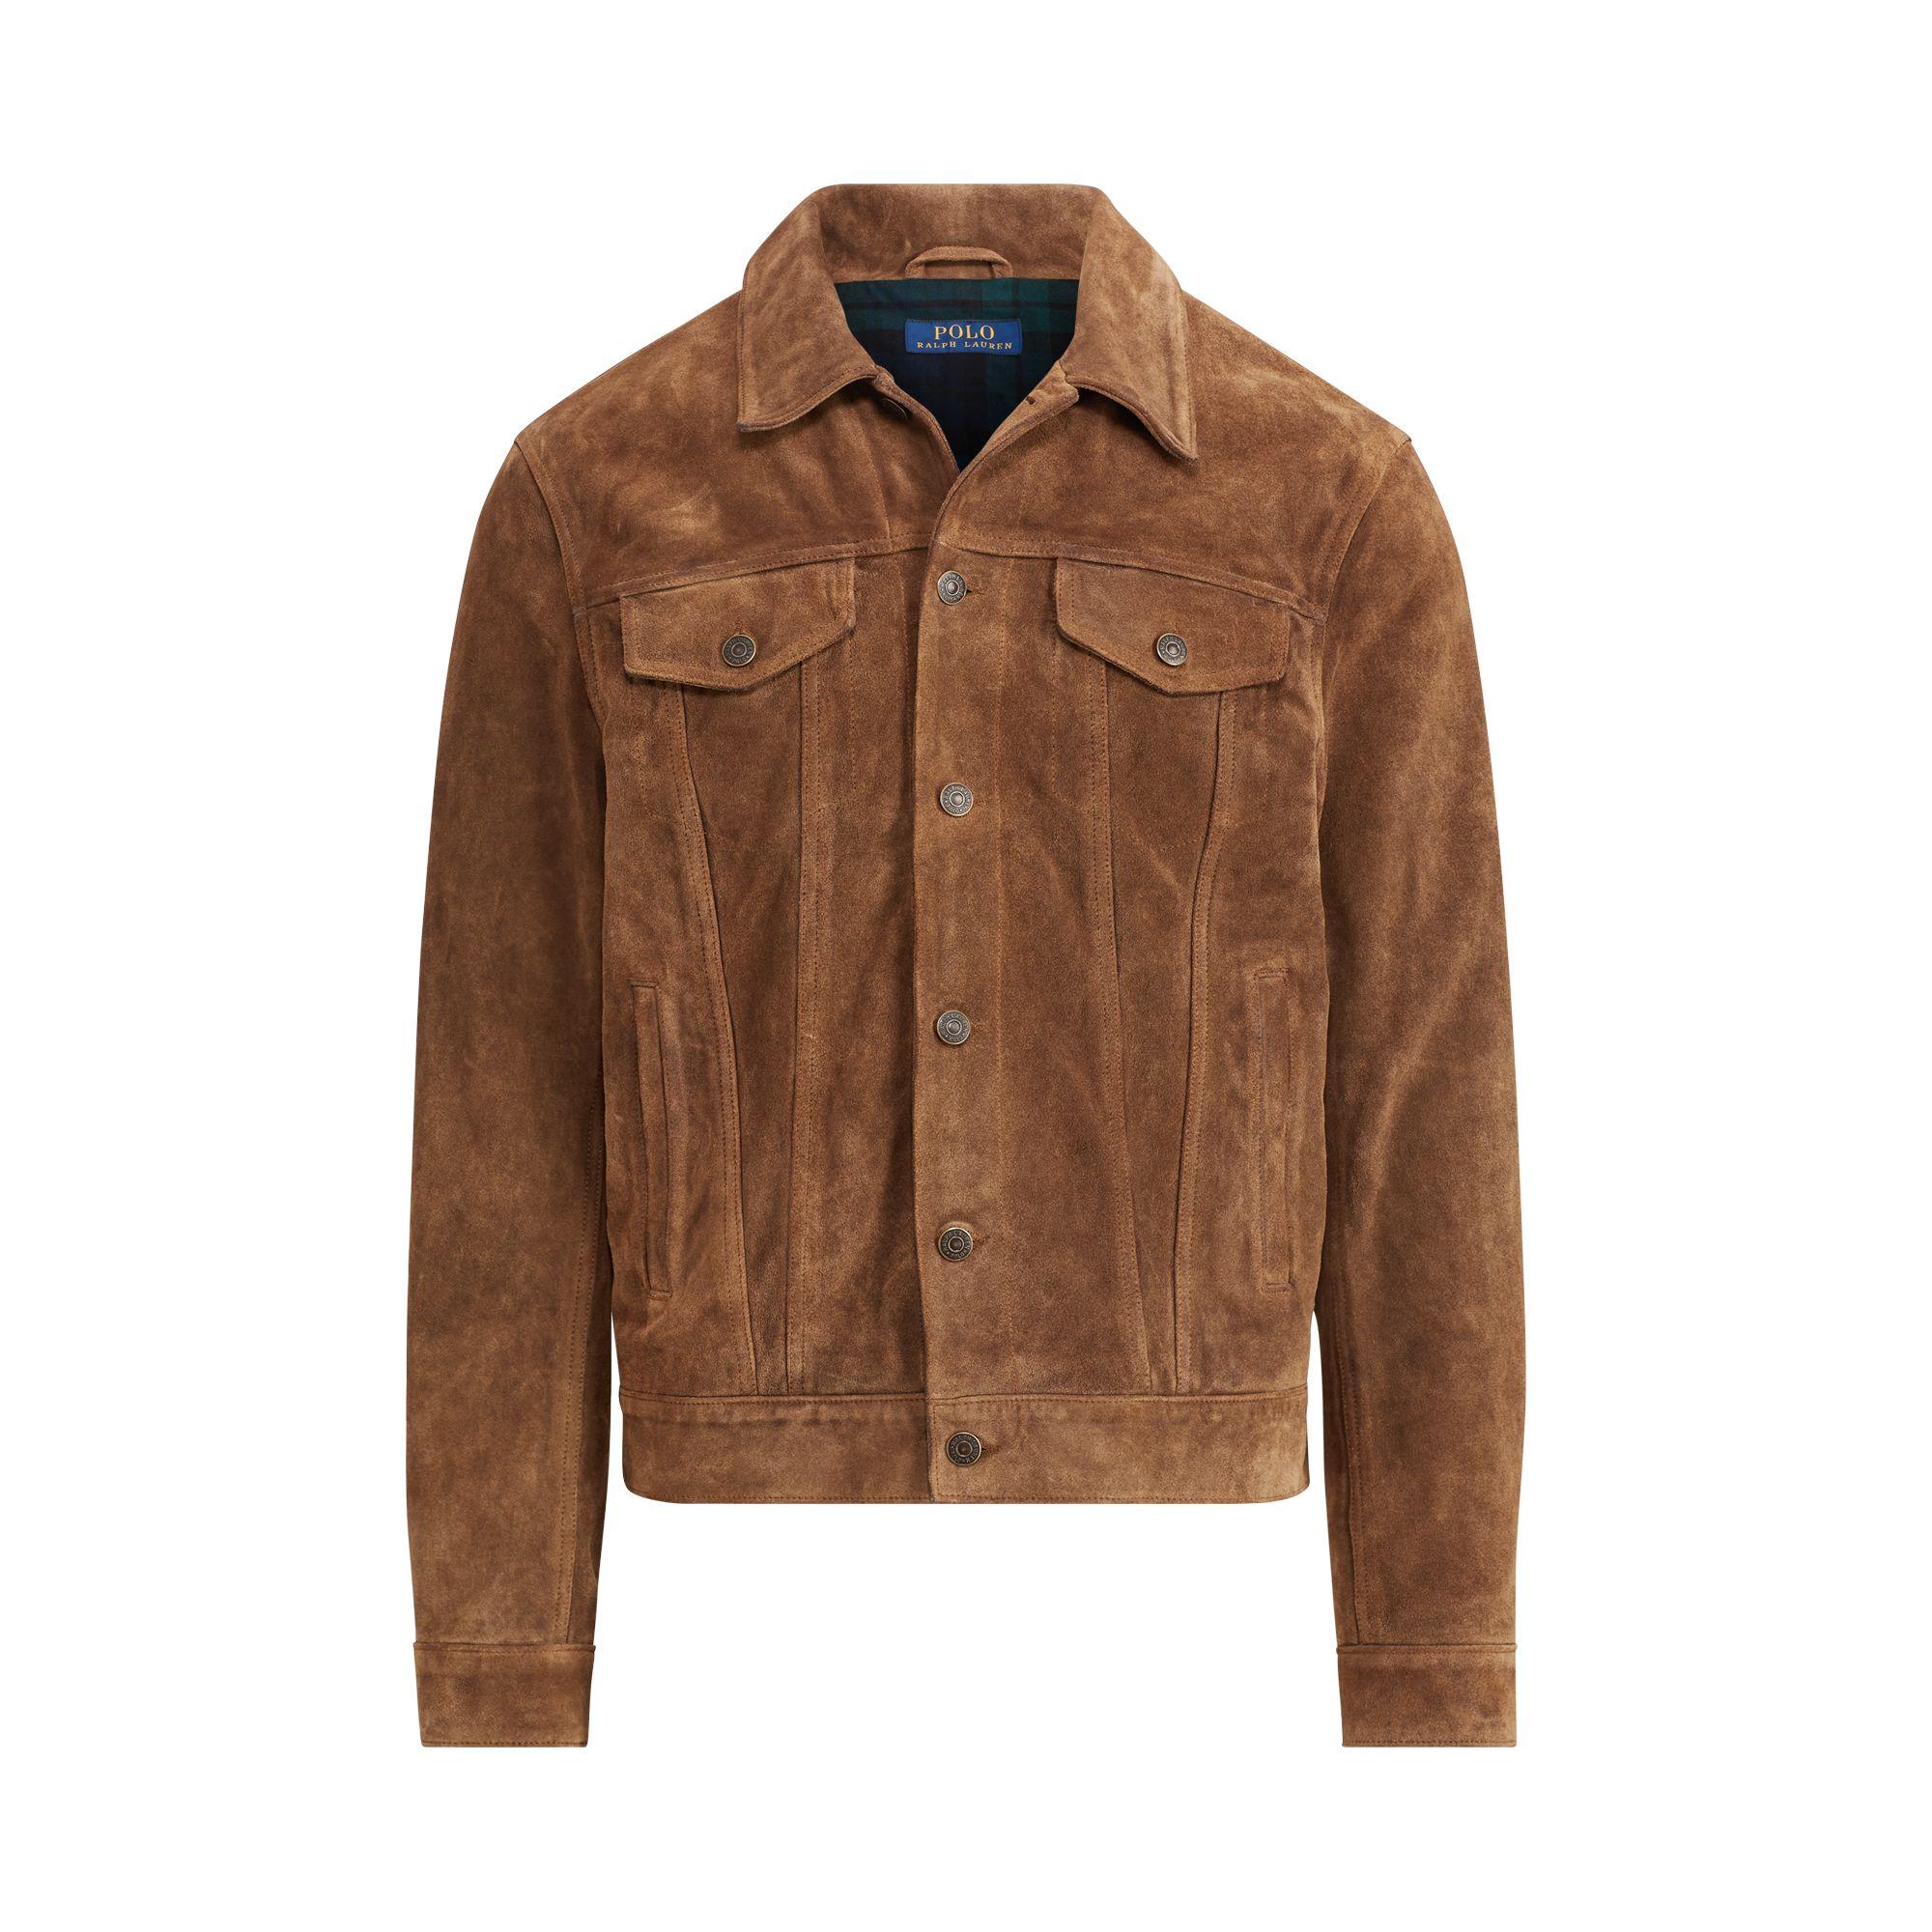 Polo Ralph Lauren Suede Trucker Jacket in Brown for Men - Lyst